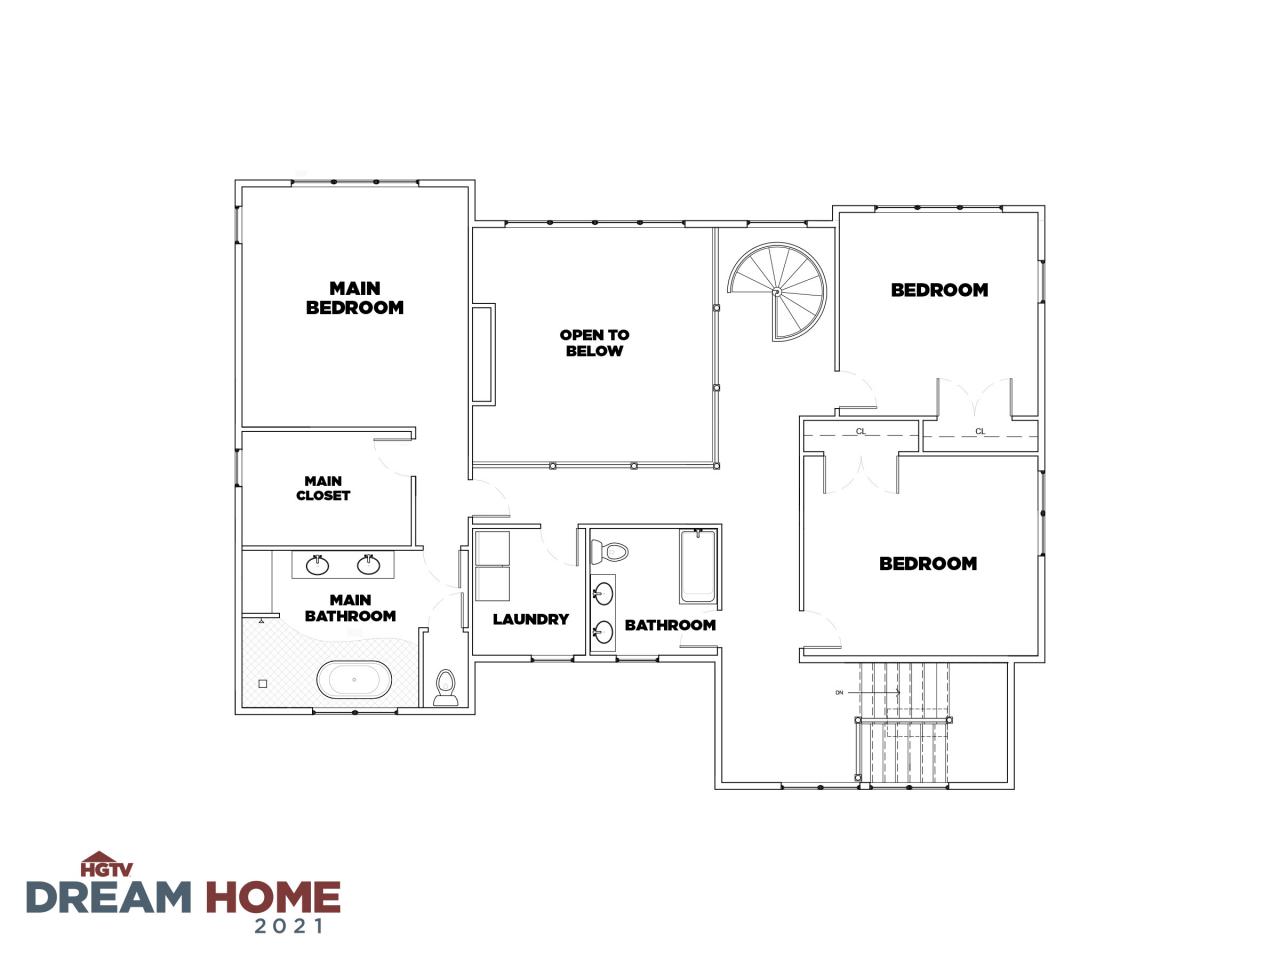 Discover the Floor Plan for HGTV Dream Home 2021 HGTV